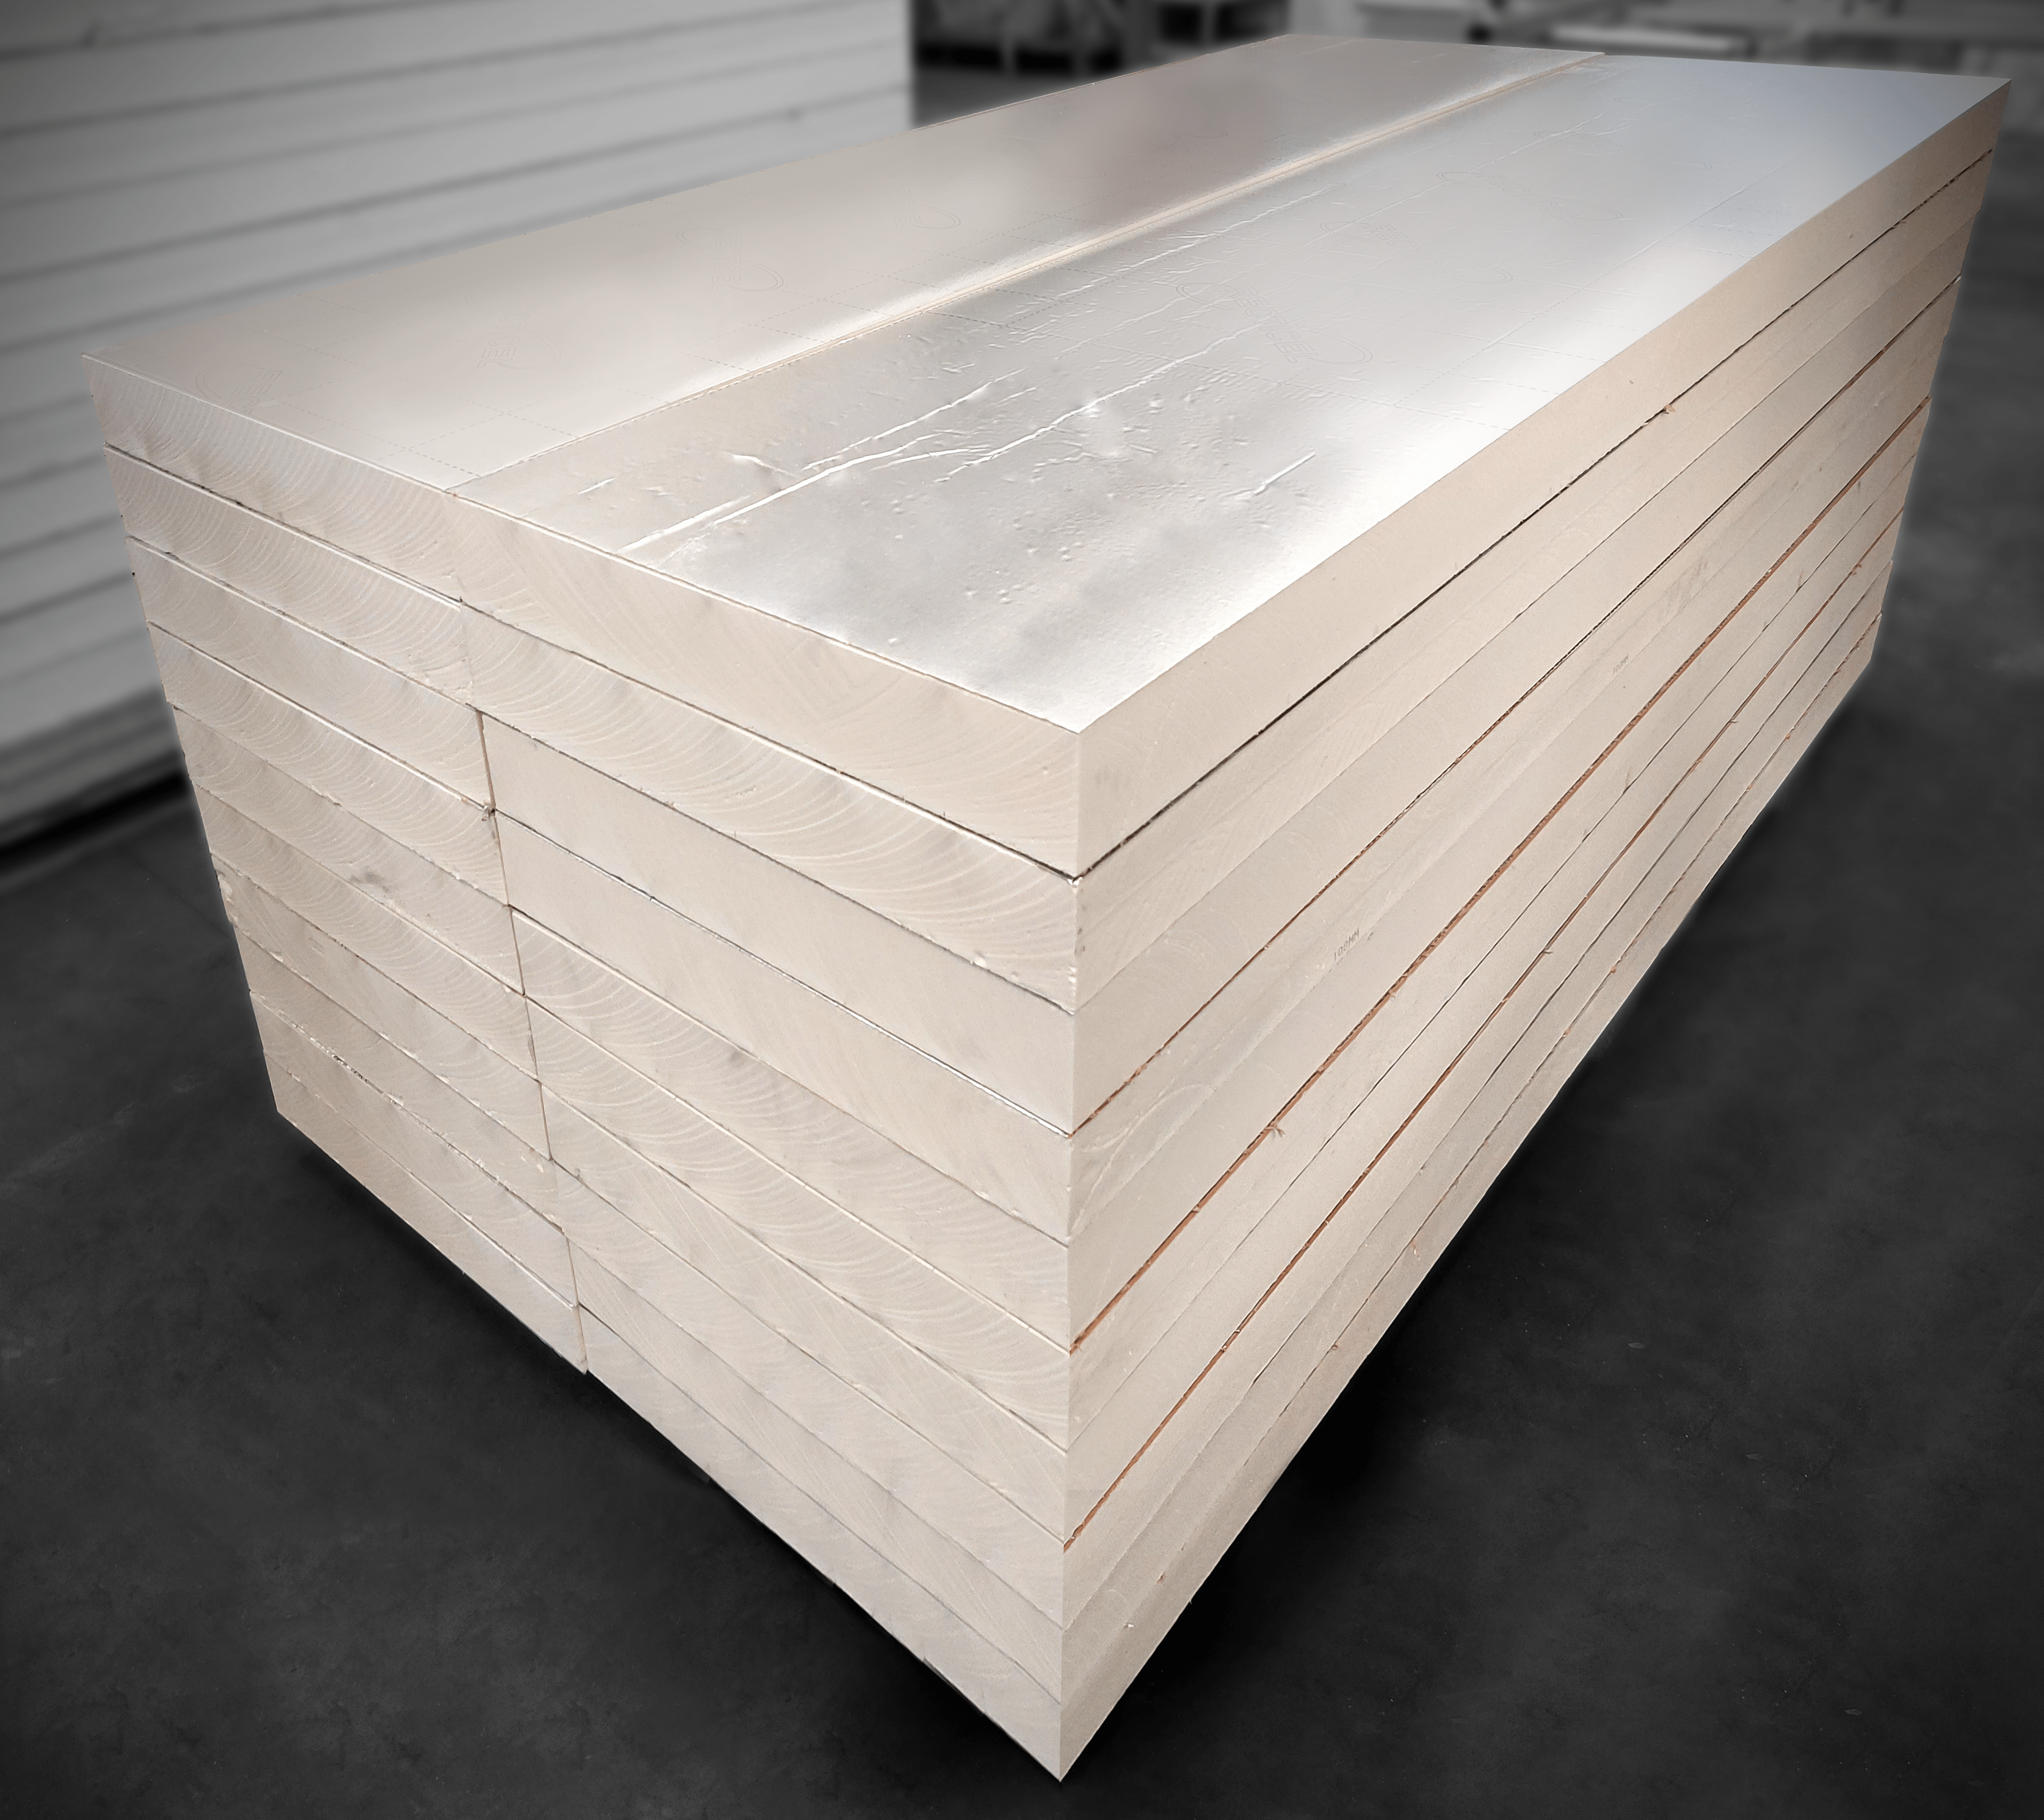 InsulationUK.co.uk PIR Board Strip 2400 x 400mm PIR Board Strip 2400 x 400mm | insulationuk.co.uk